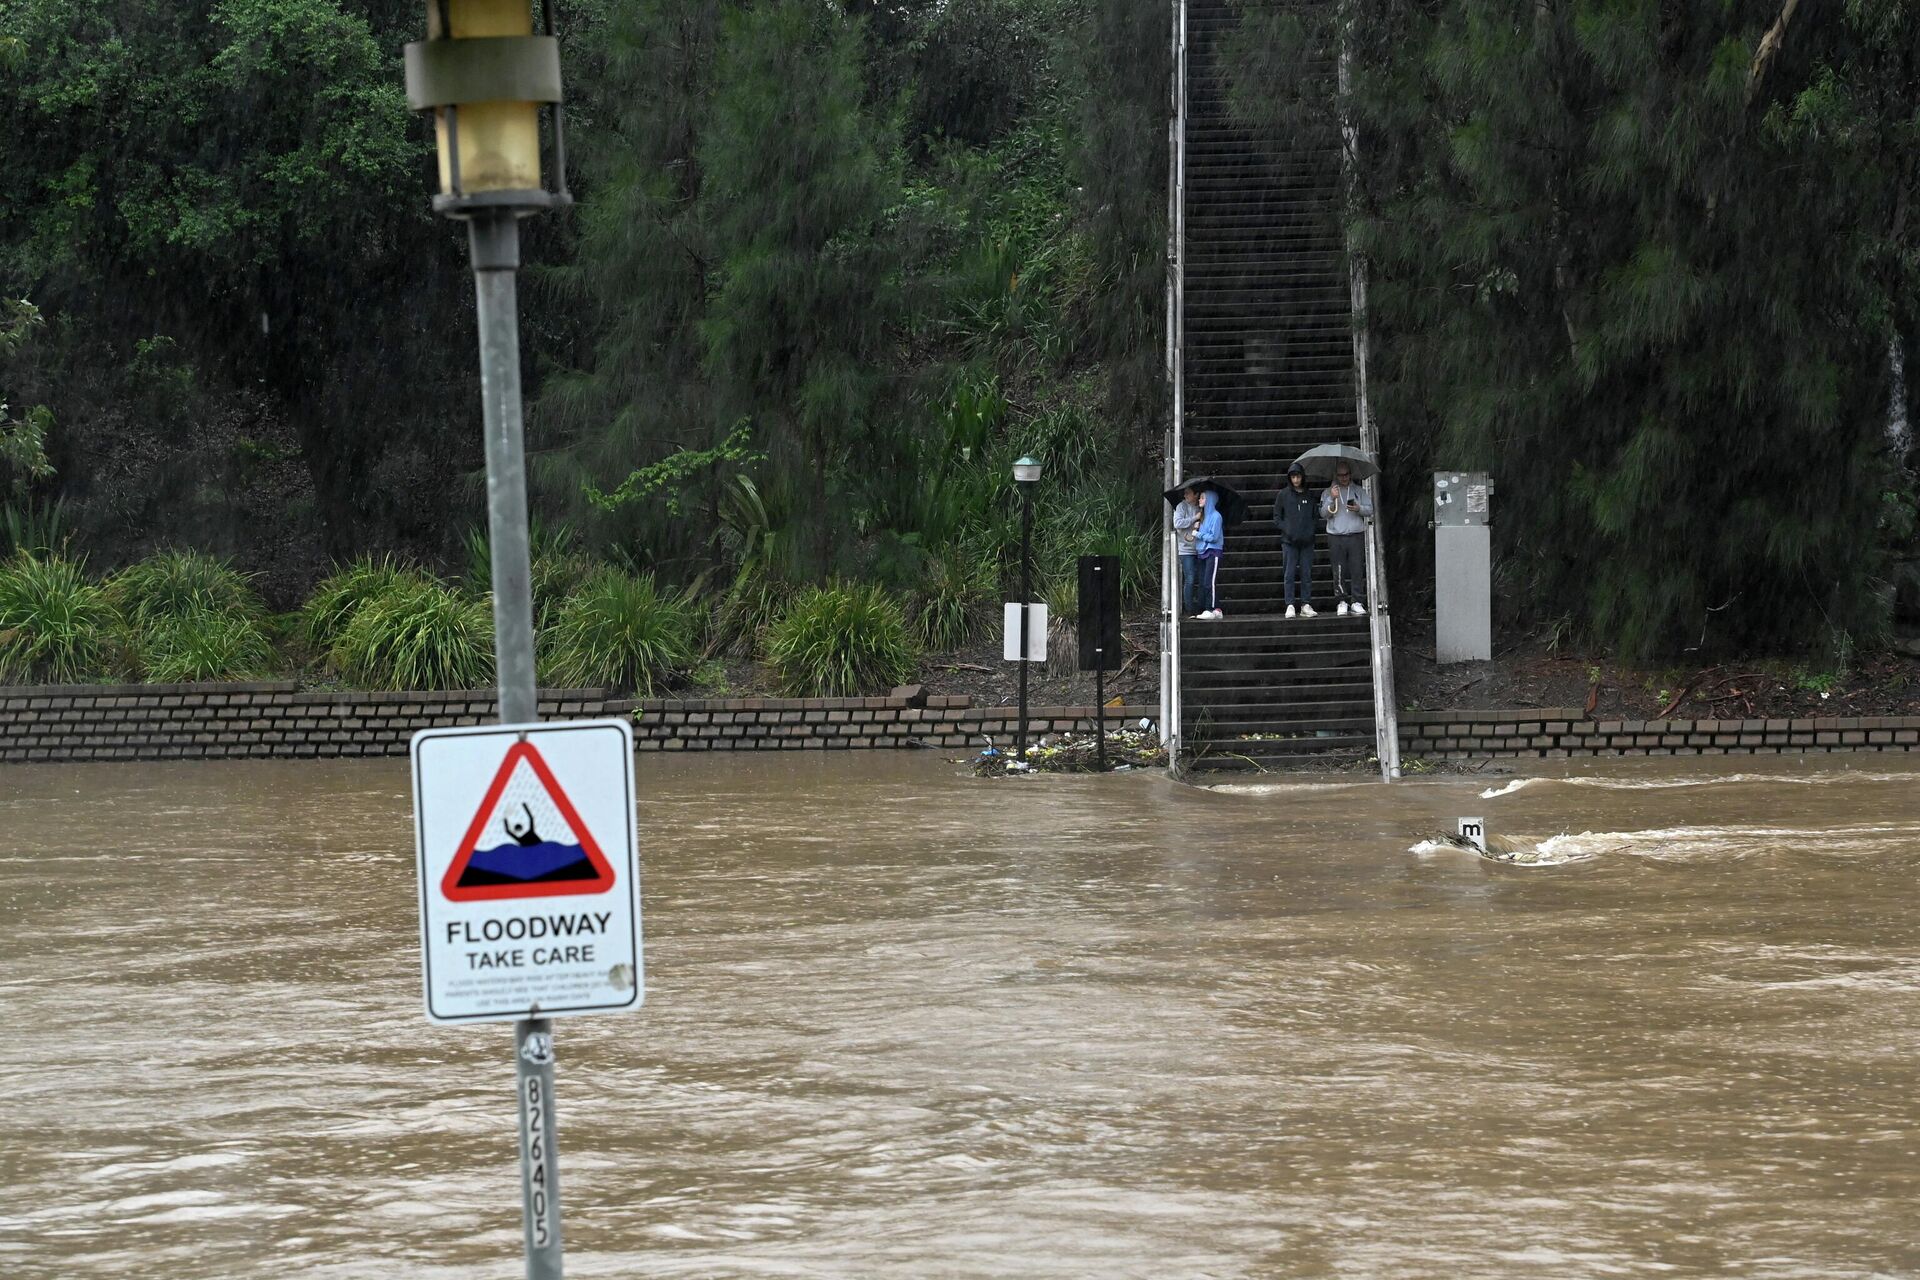 Inundación provocada por fuertes lluvias en Australia, el 20 de marzo de 2021 - Sputnik Mundo, 1920, 20.03.2021